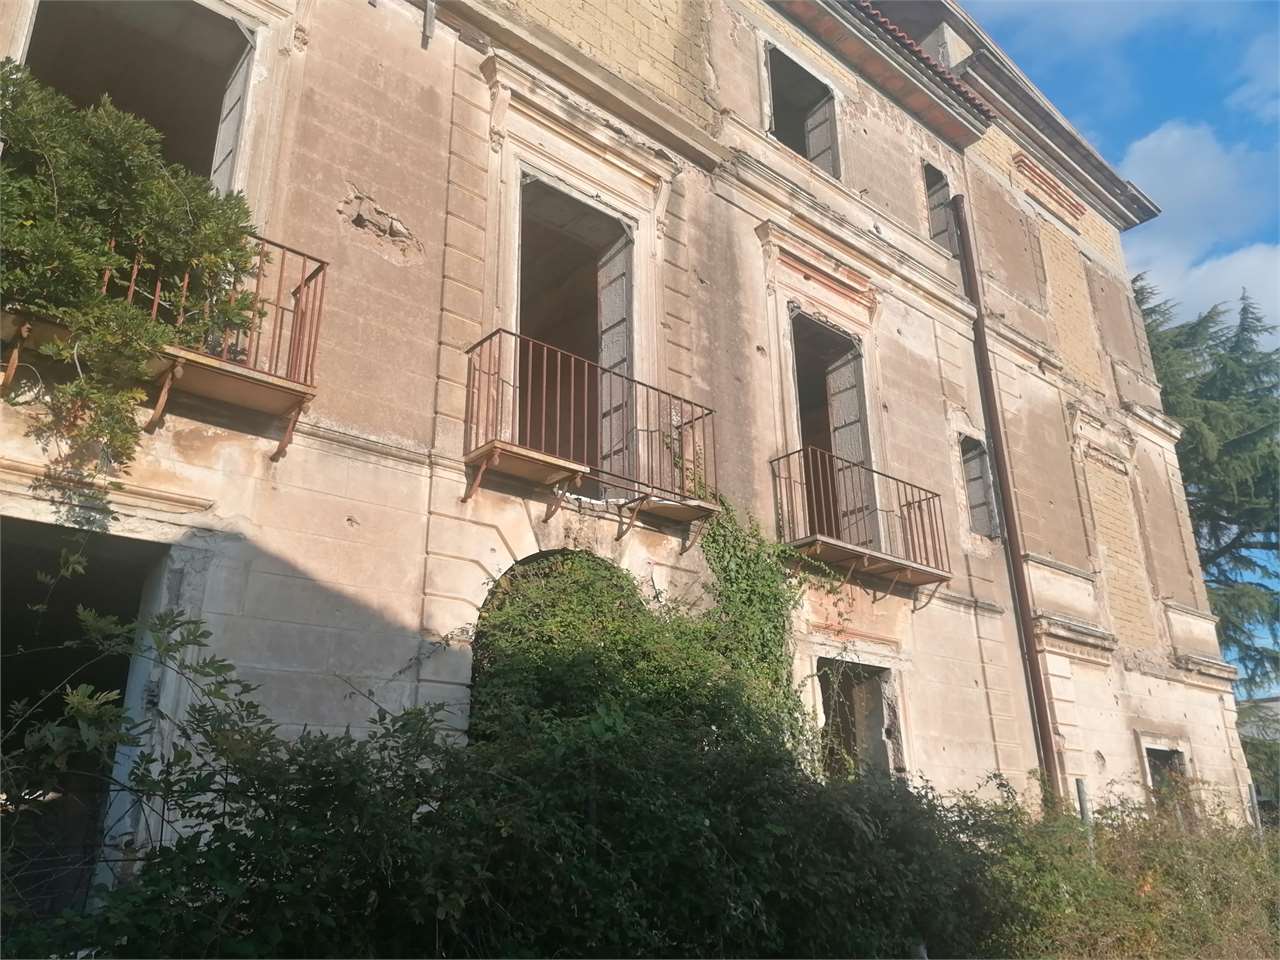 Palazzo / Stabile in vendita a Sparanise, 9999 locali, prezzo € 350.000 | PortaleAgenzieImmobiliari.it